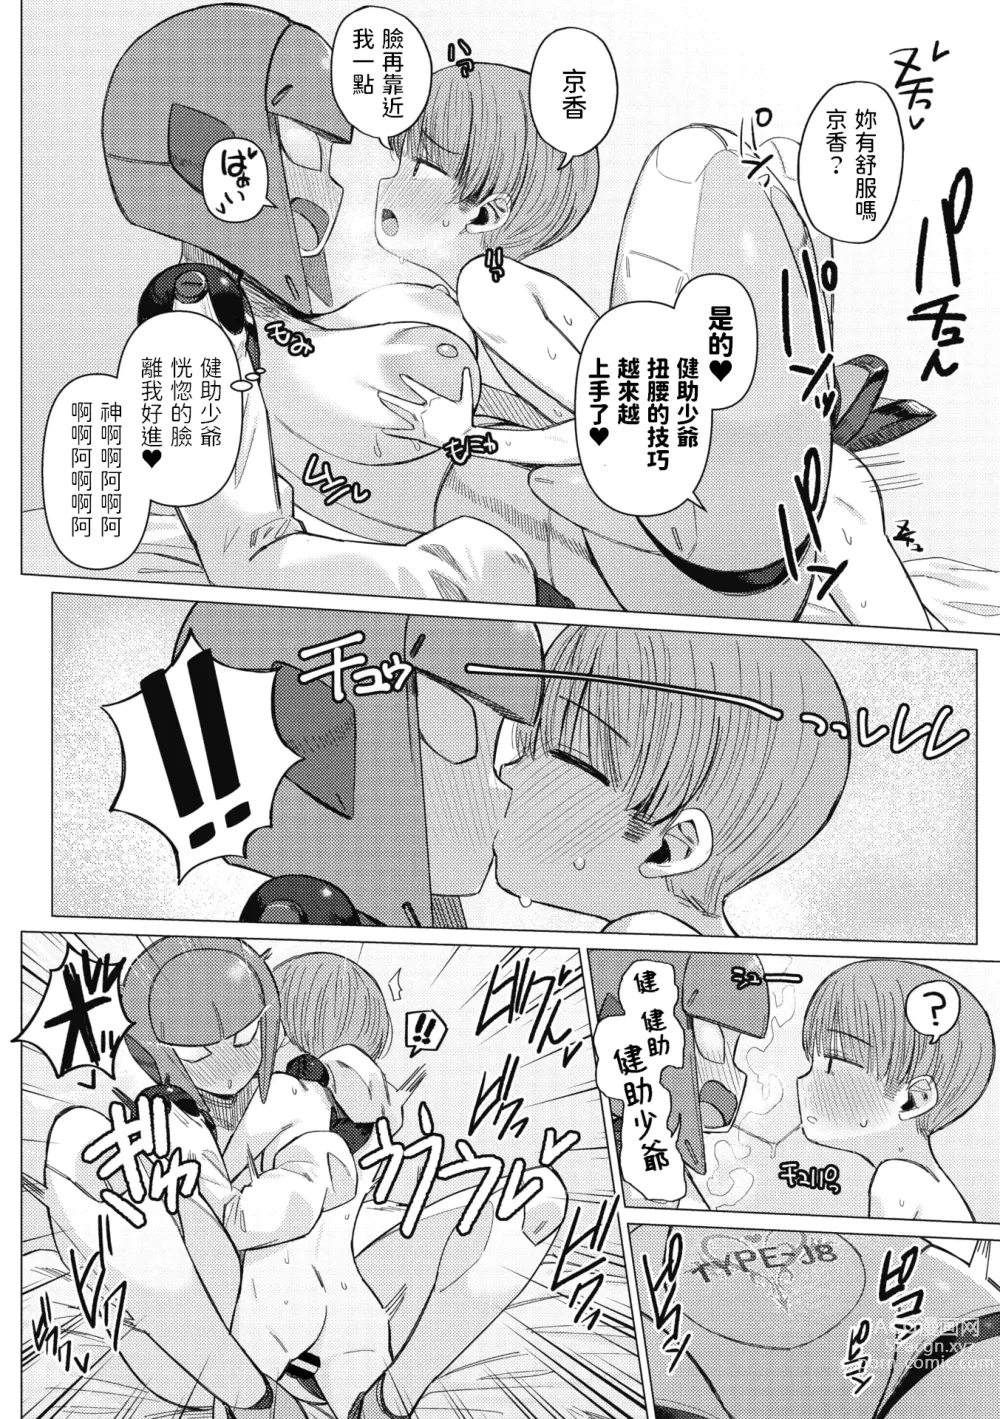 Page 22 of manga Kikai Musume to Seizon Senryaku